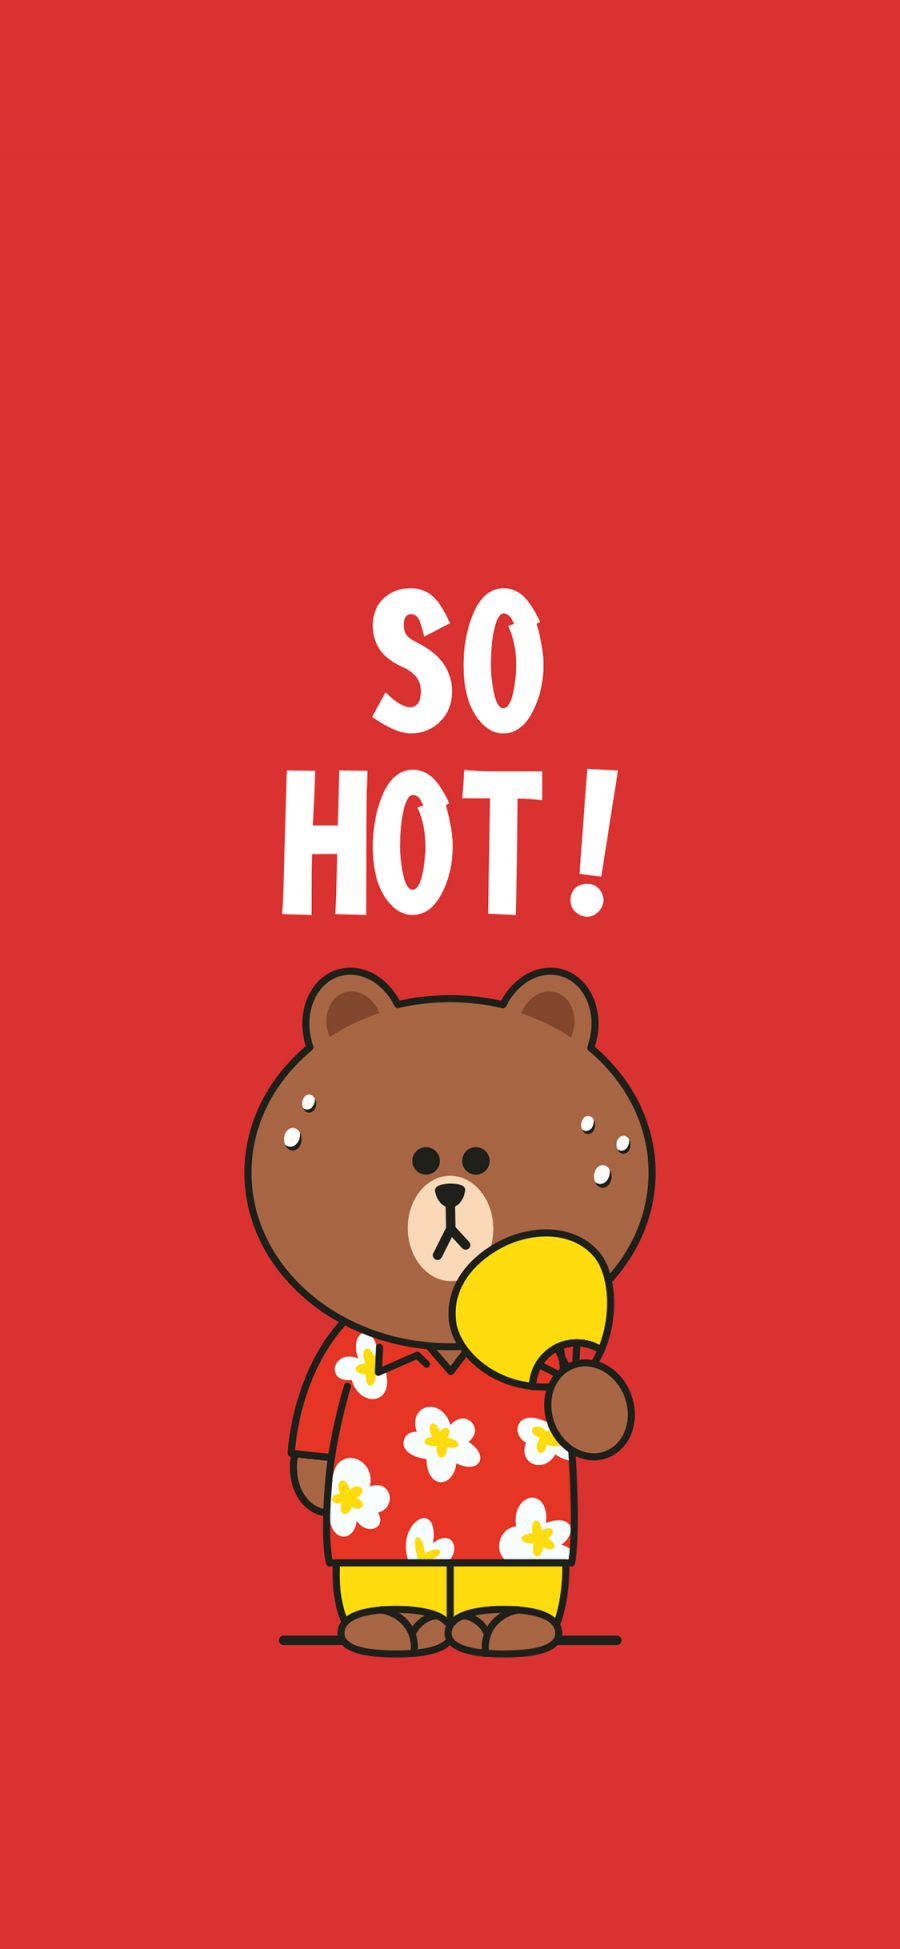 [2436×1125]热 so hot linefriends 布朗熊 红色 苹果手机动漫壁纸图片